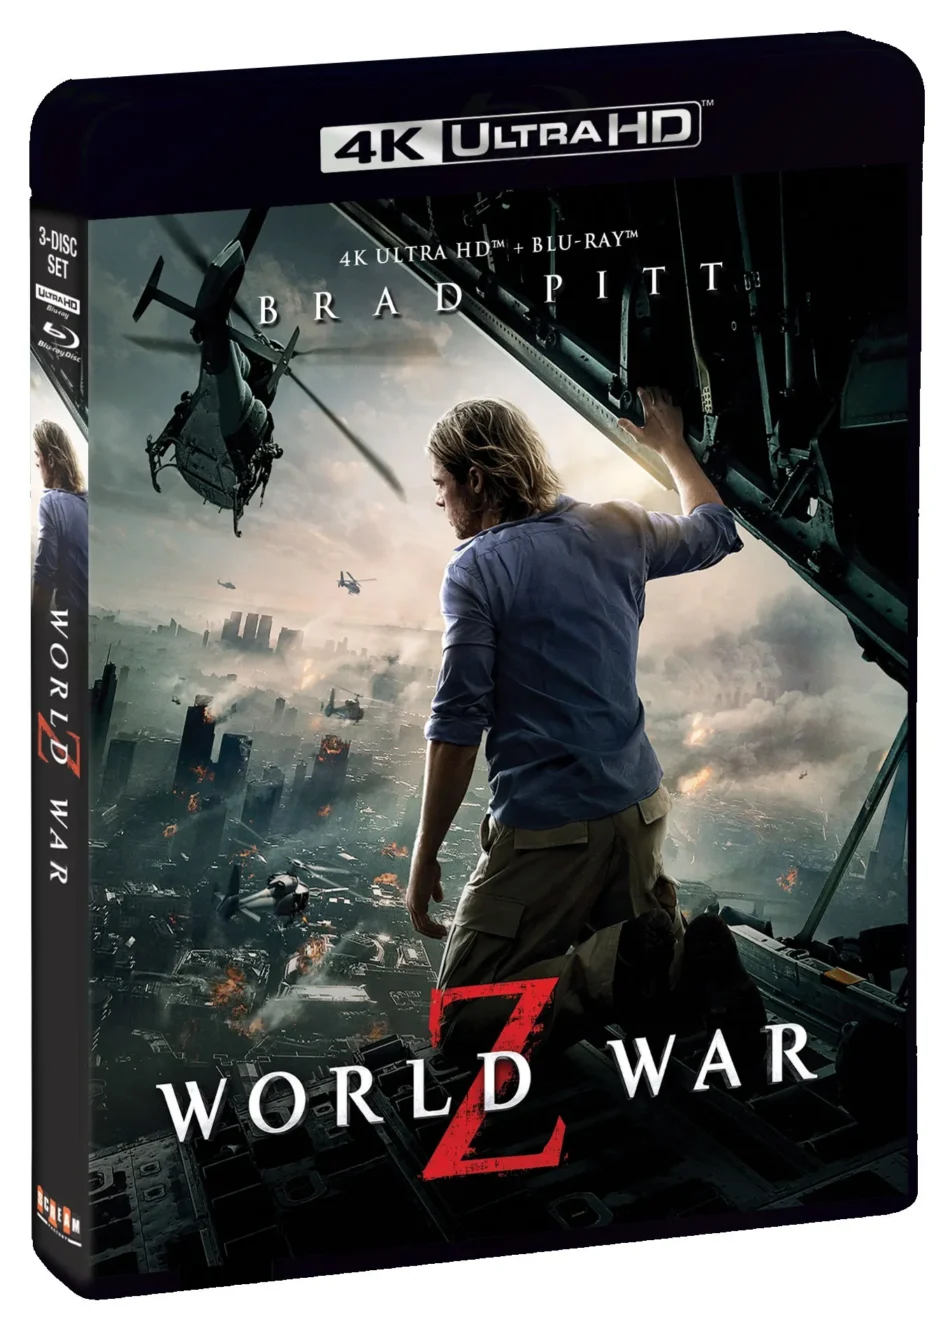 World War Z: Aftermath - Pre-Order Trailer 